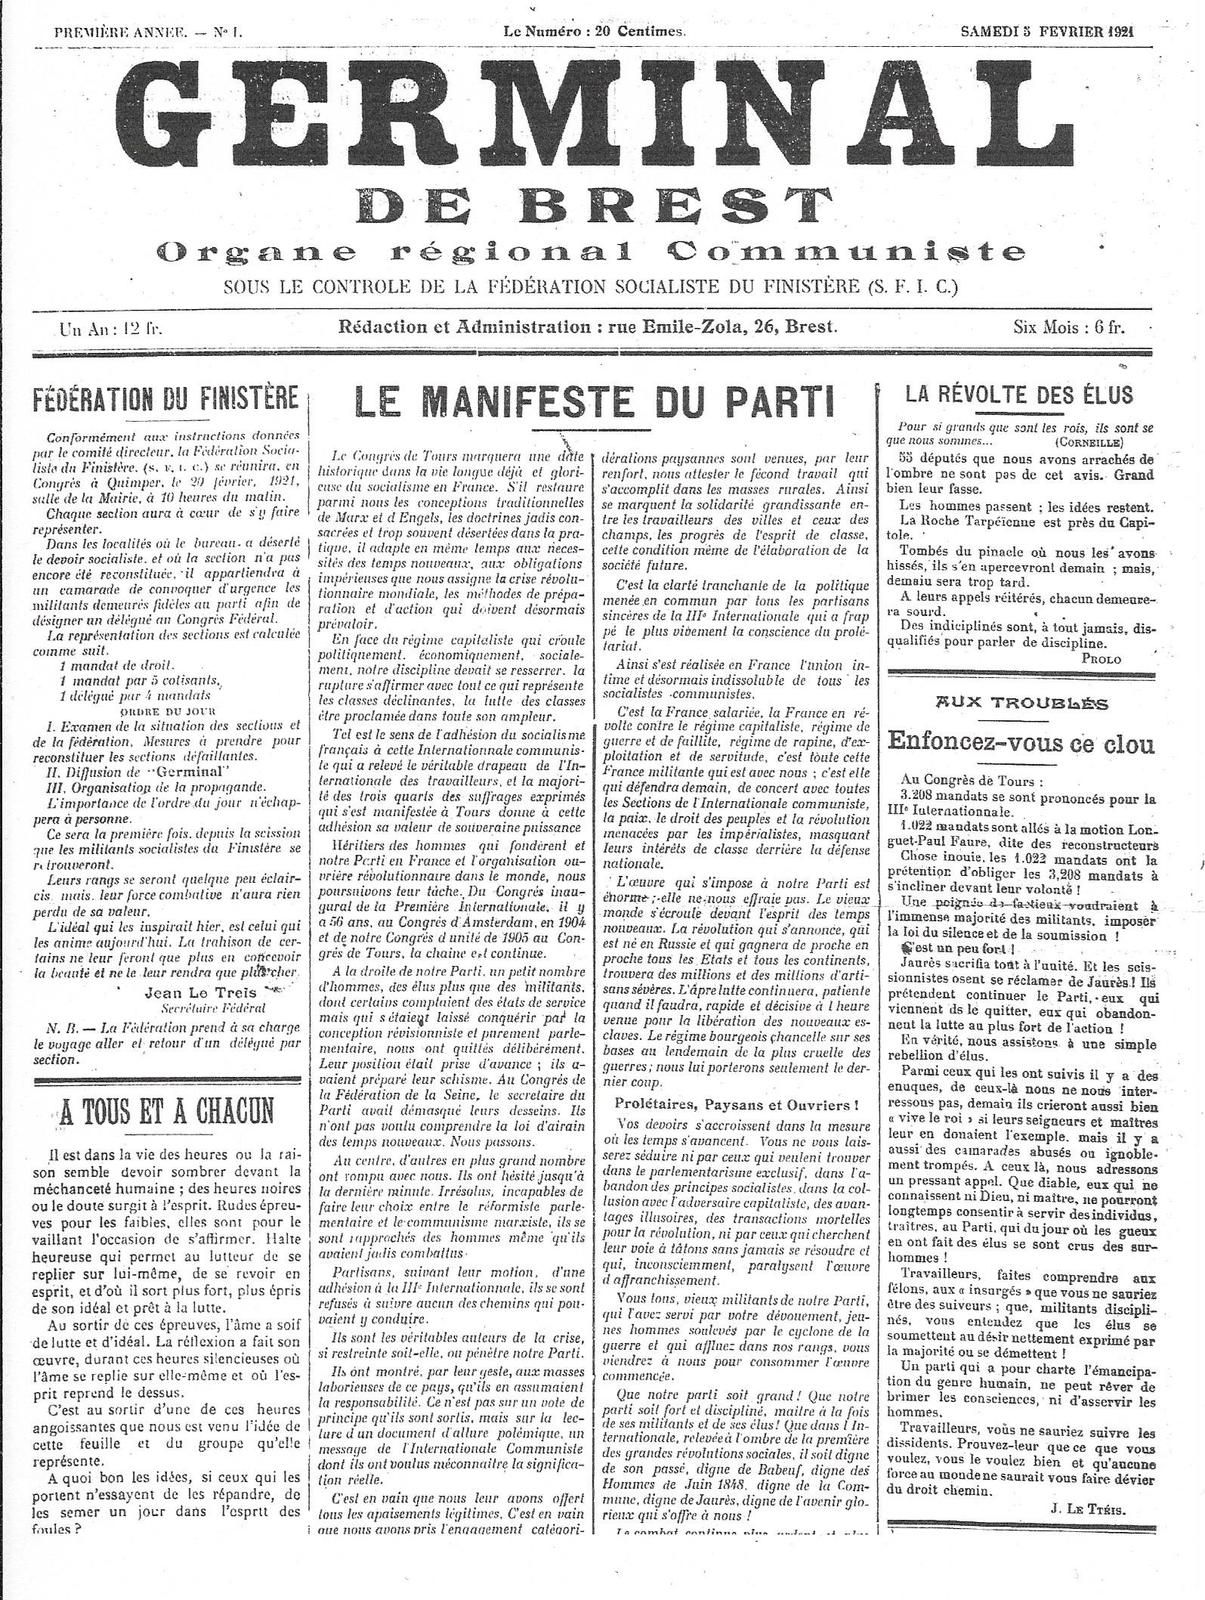 Germinal de Brest, organe régional communiste sous le contrôle de la SFIC - 1er numéro, 5 février 1921